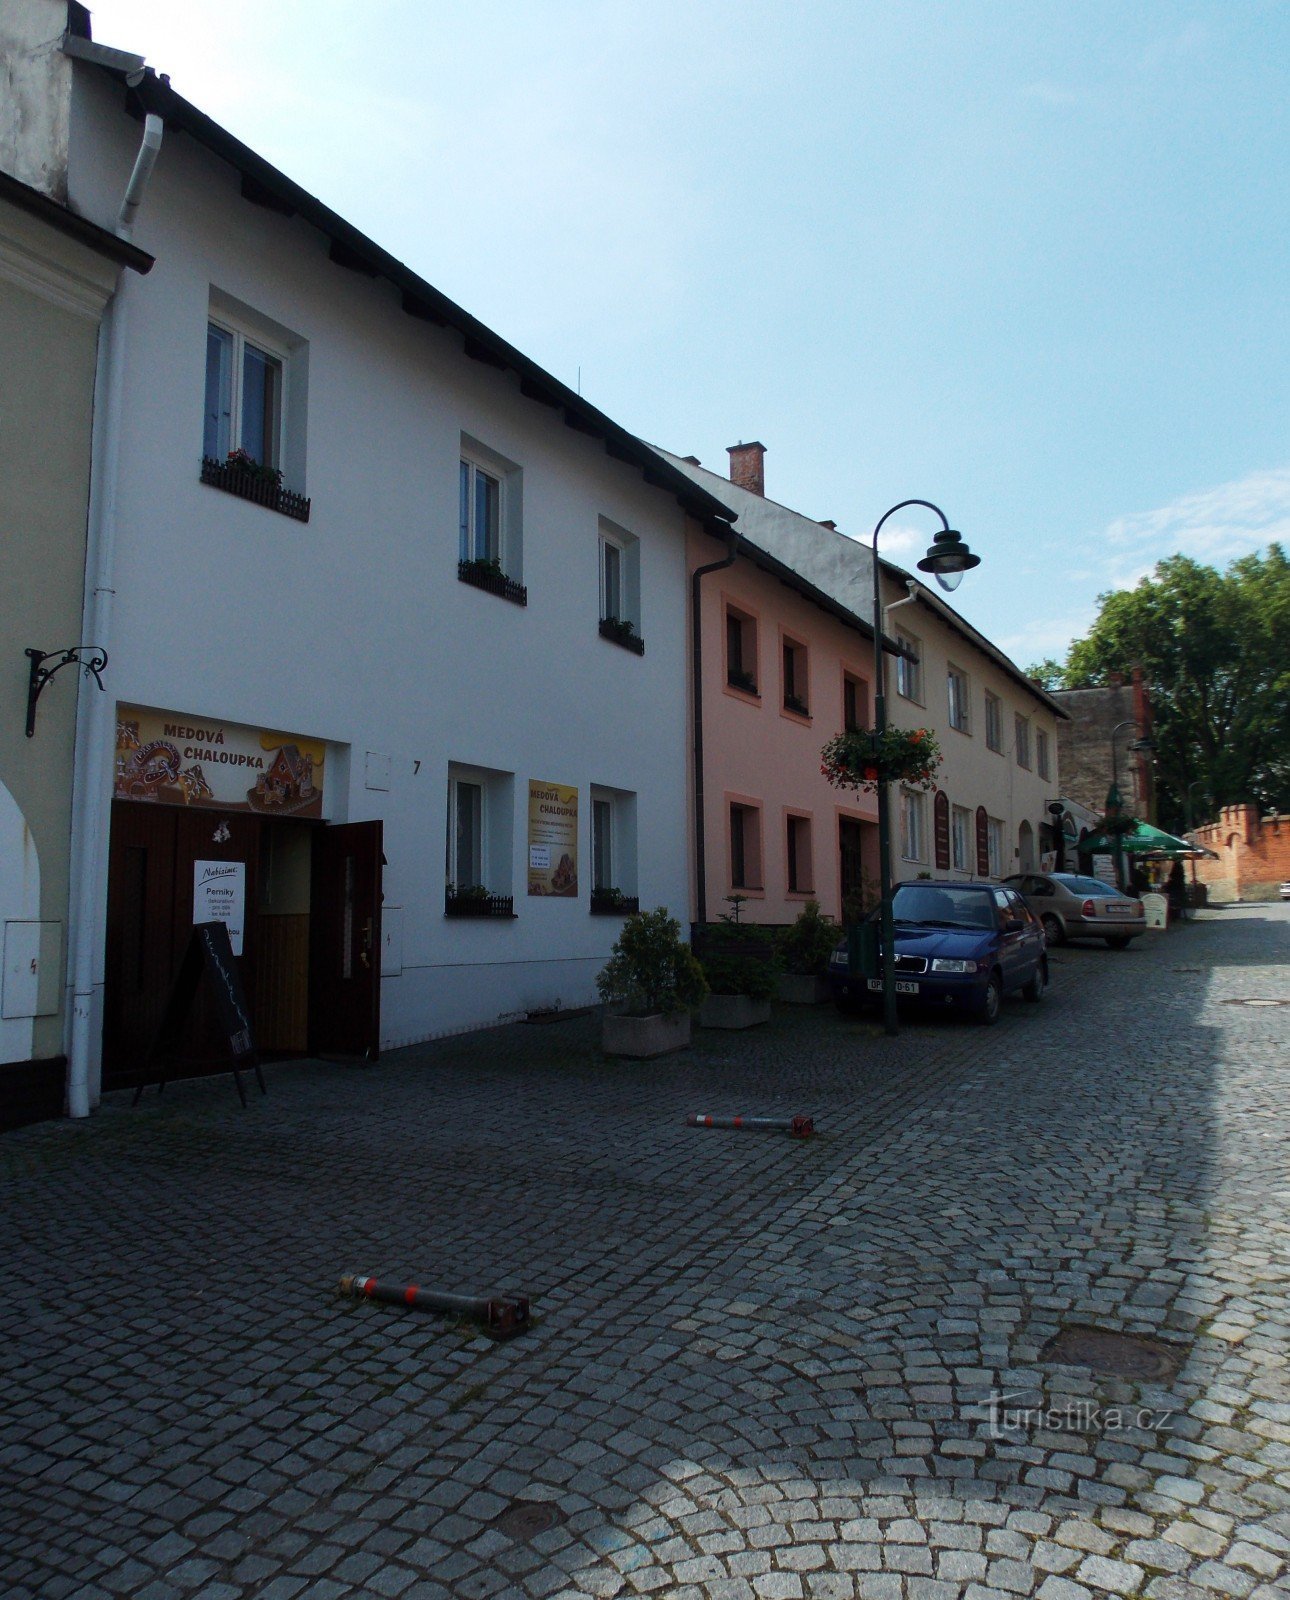 Đến Medová chaloupka ở Hradec nad Moravicí